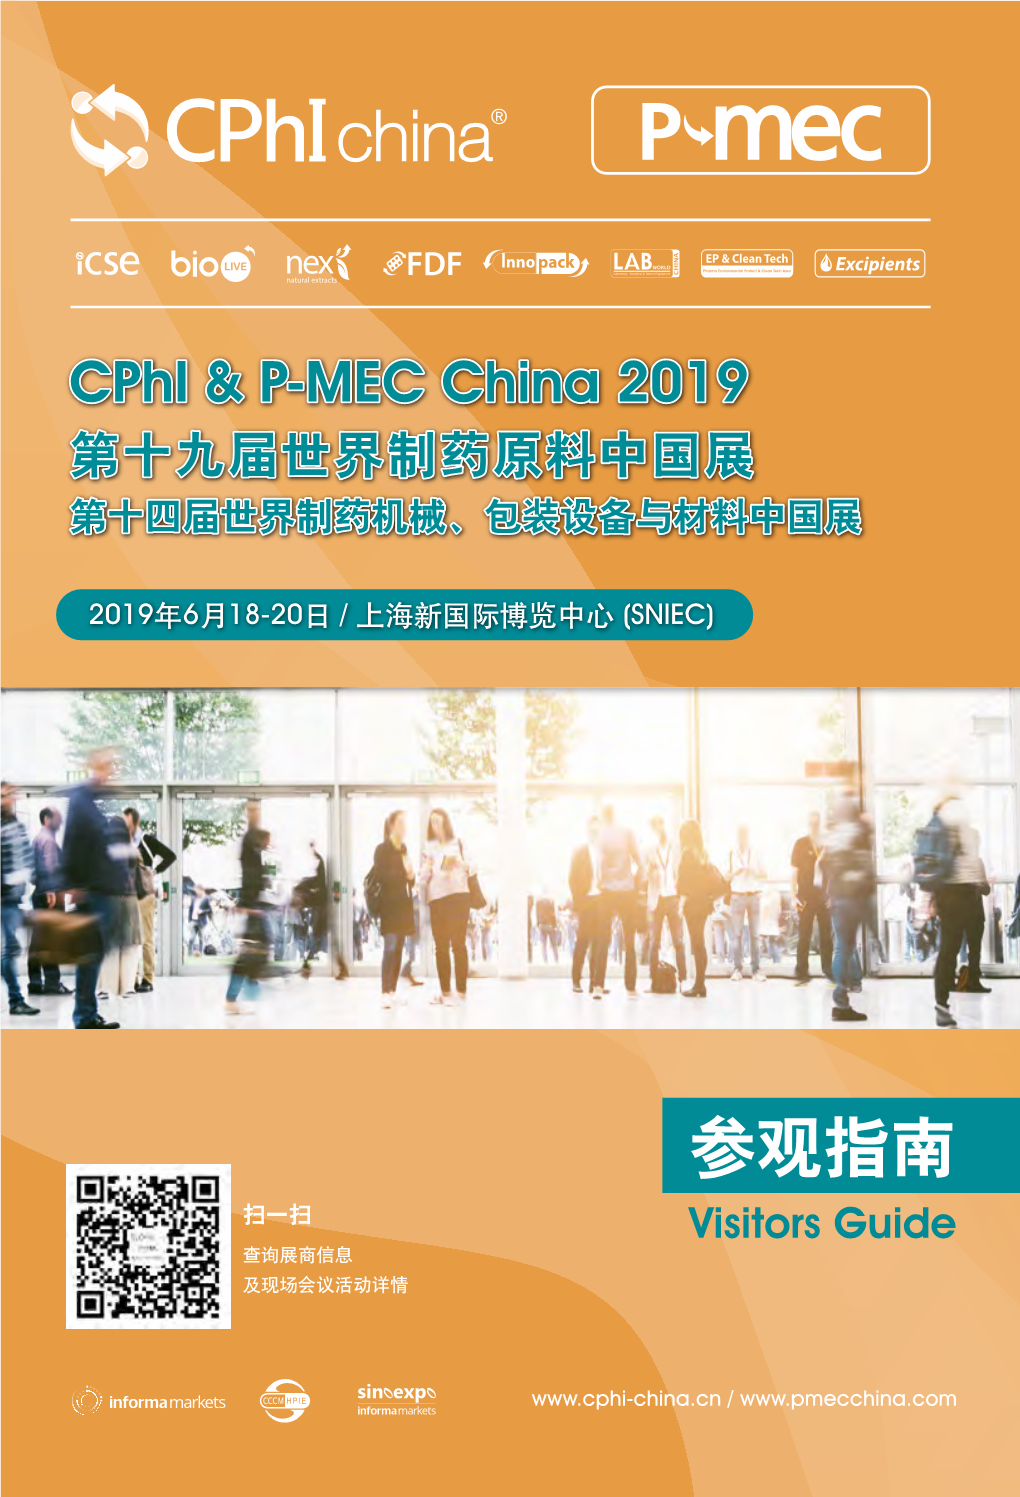 Cphi & P-MEC China 2019